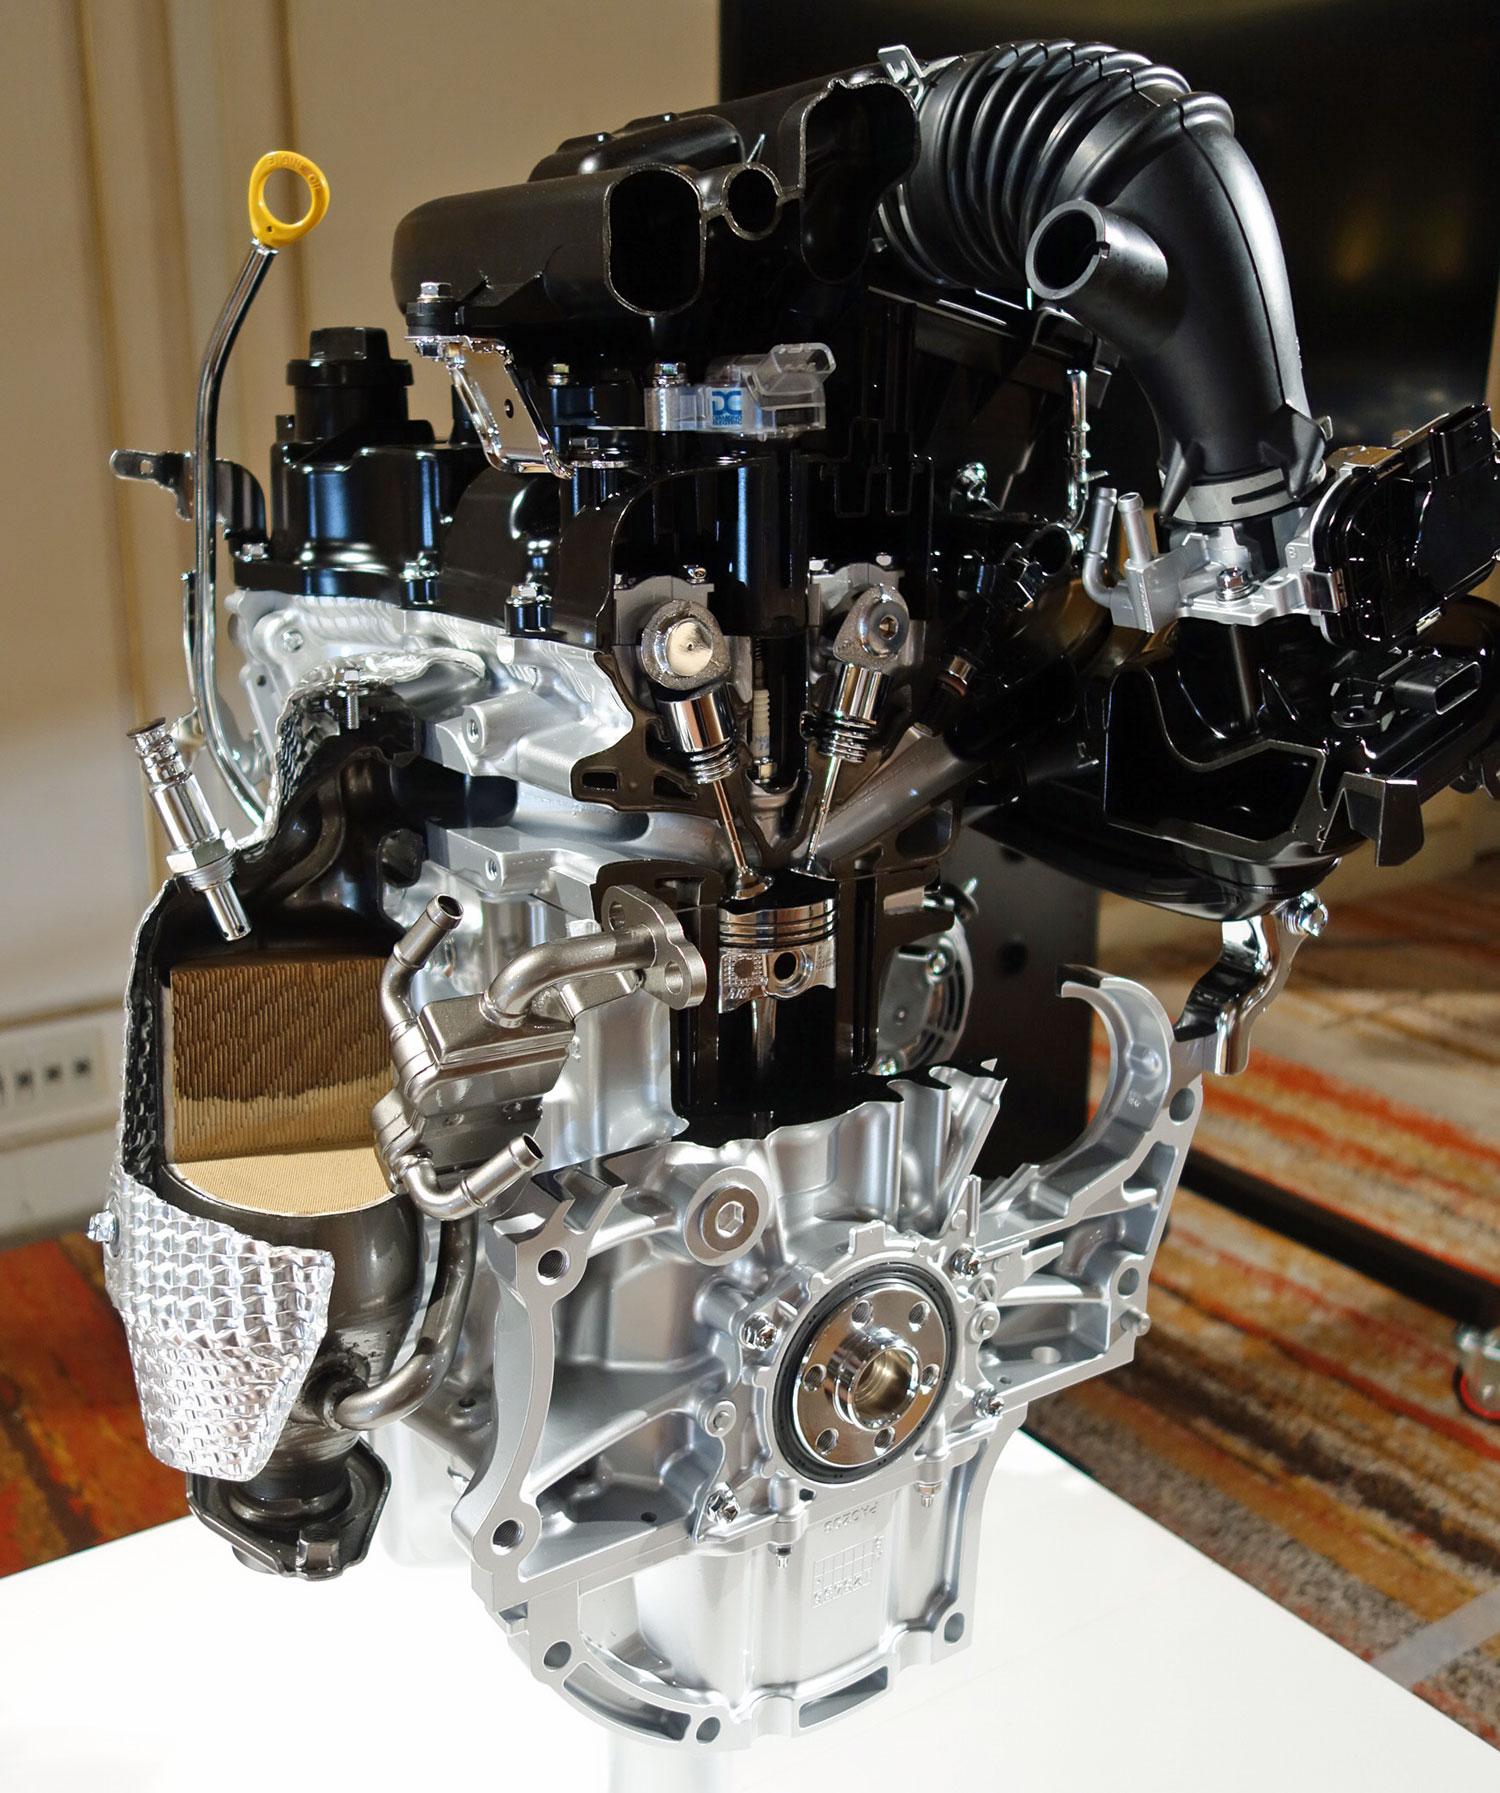 ダイハツ新エンジン Egr世界最高水準もコスト削減の真骨頂 日経クロステック Xtech